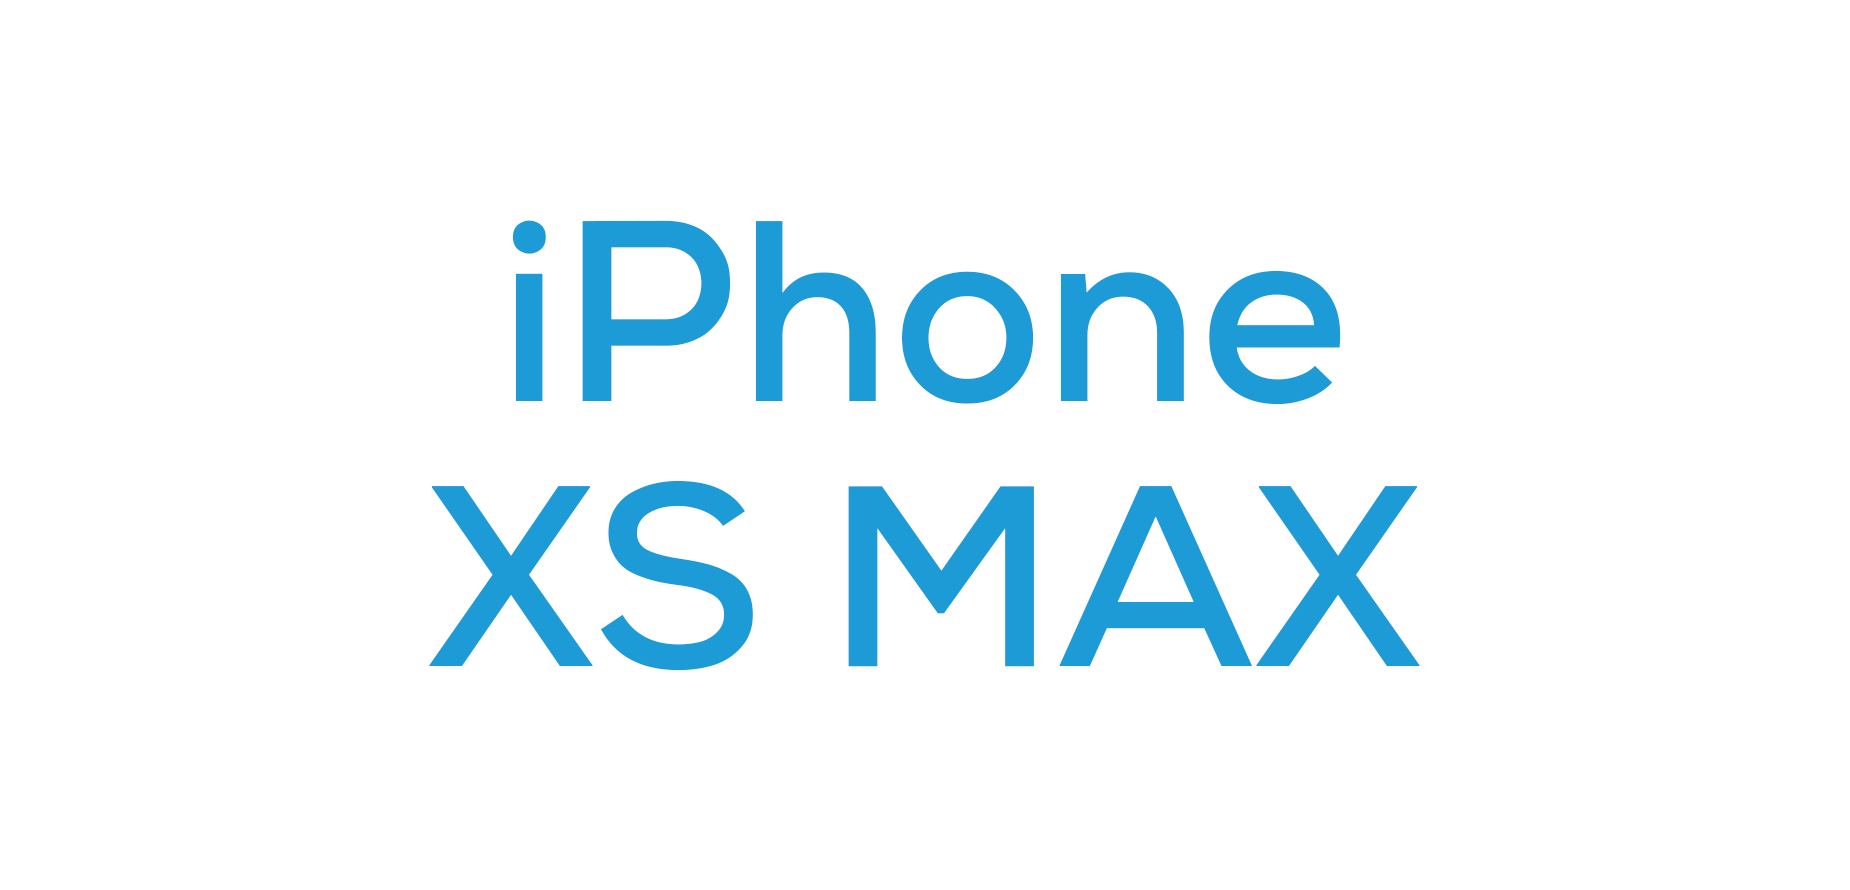 iPhone XS MAX